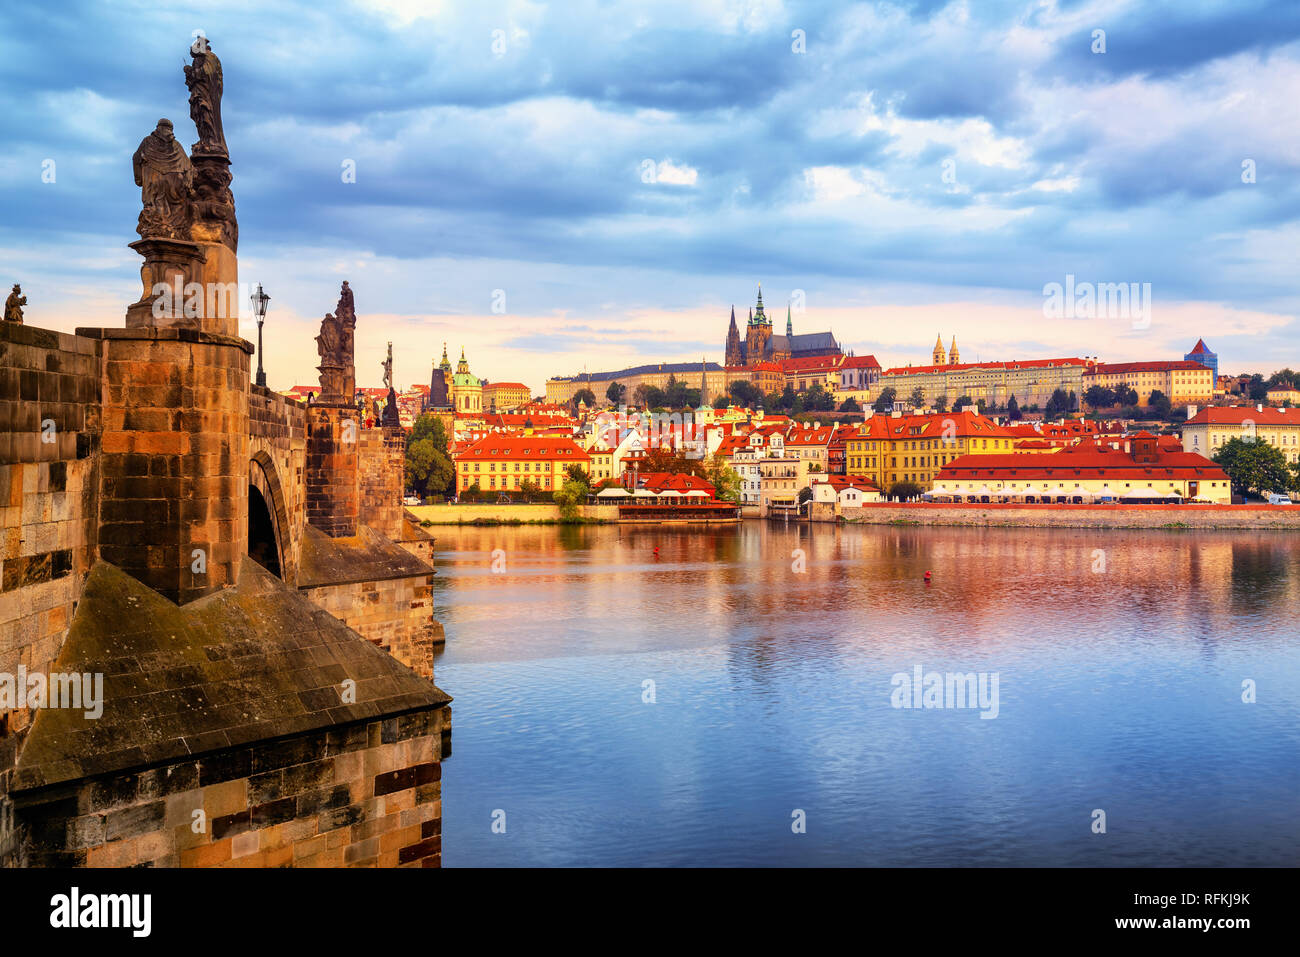 La vieille ville de Prague, le Pont Charles, la Cathédrale St Vitus et du château de Prague, République tchèque, reflétant dans la rivière Vltava sur Sunrise Banque D'Images